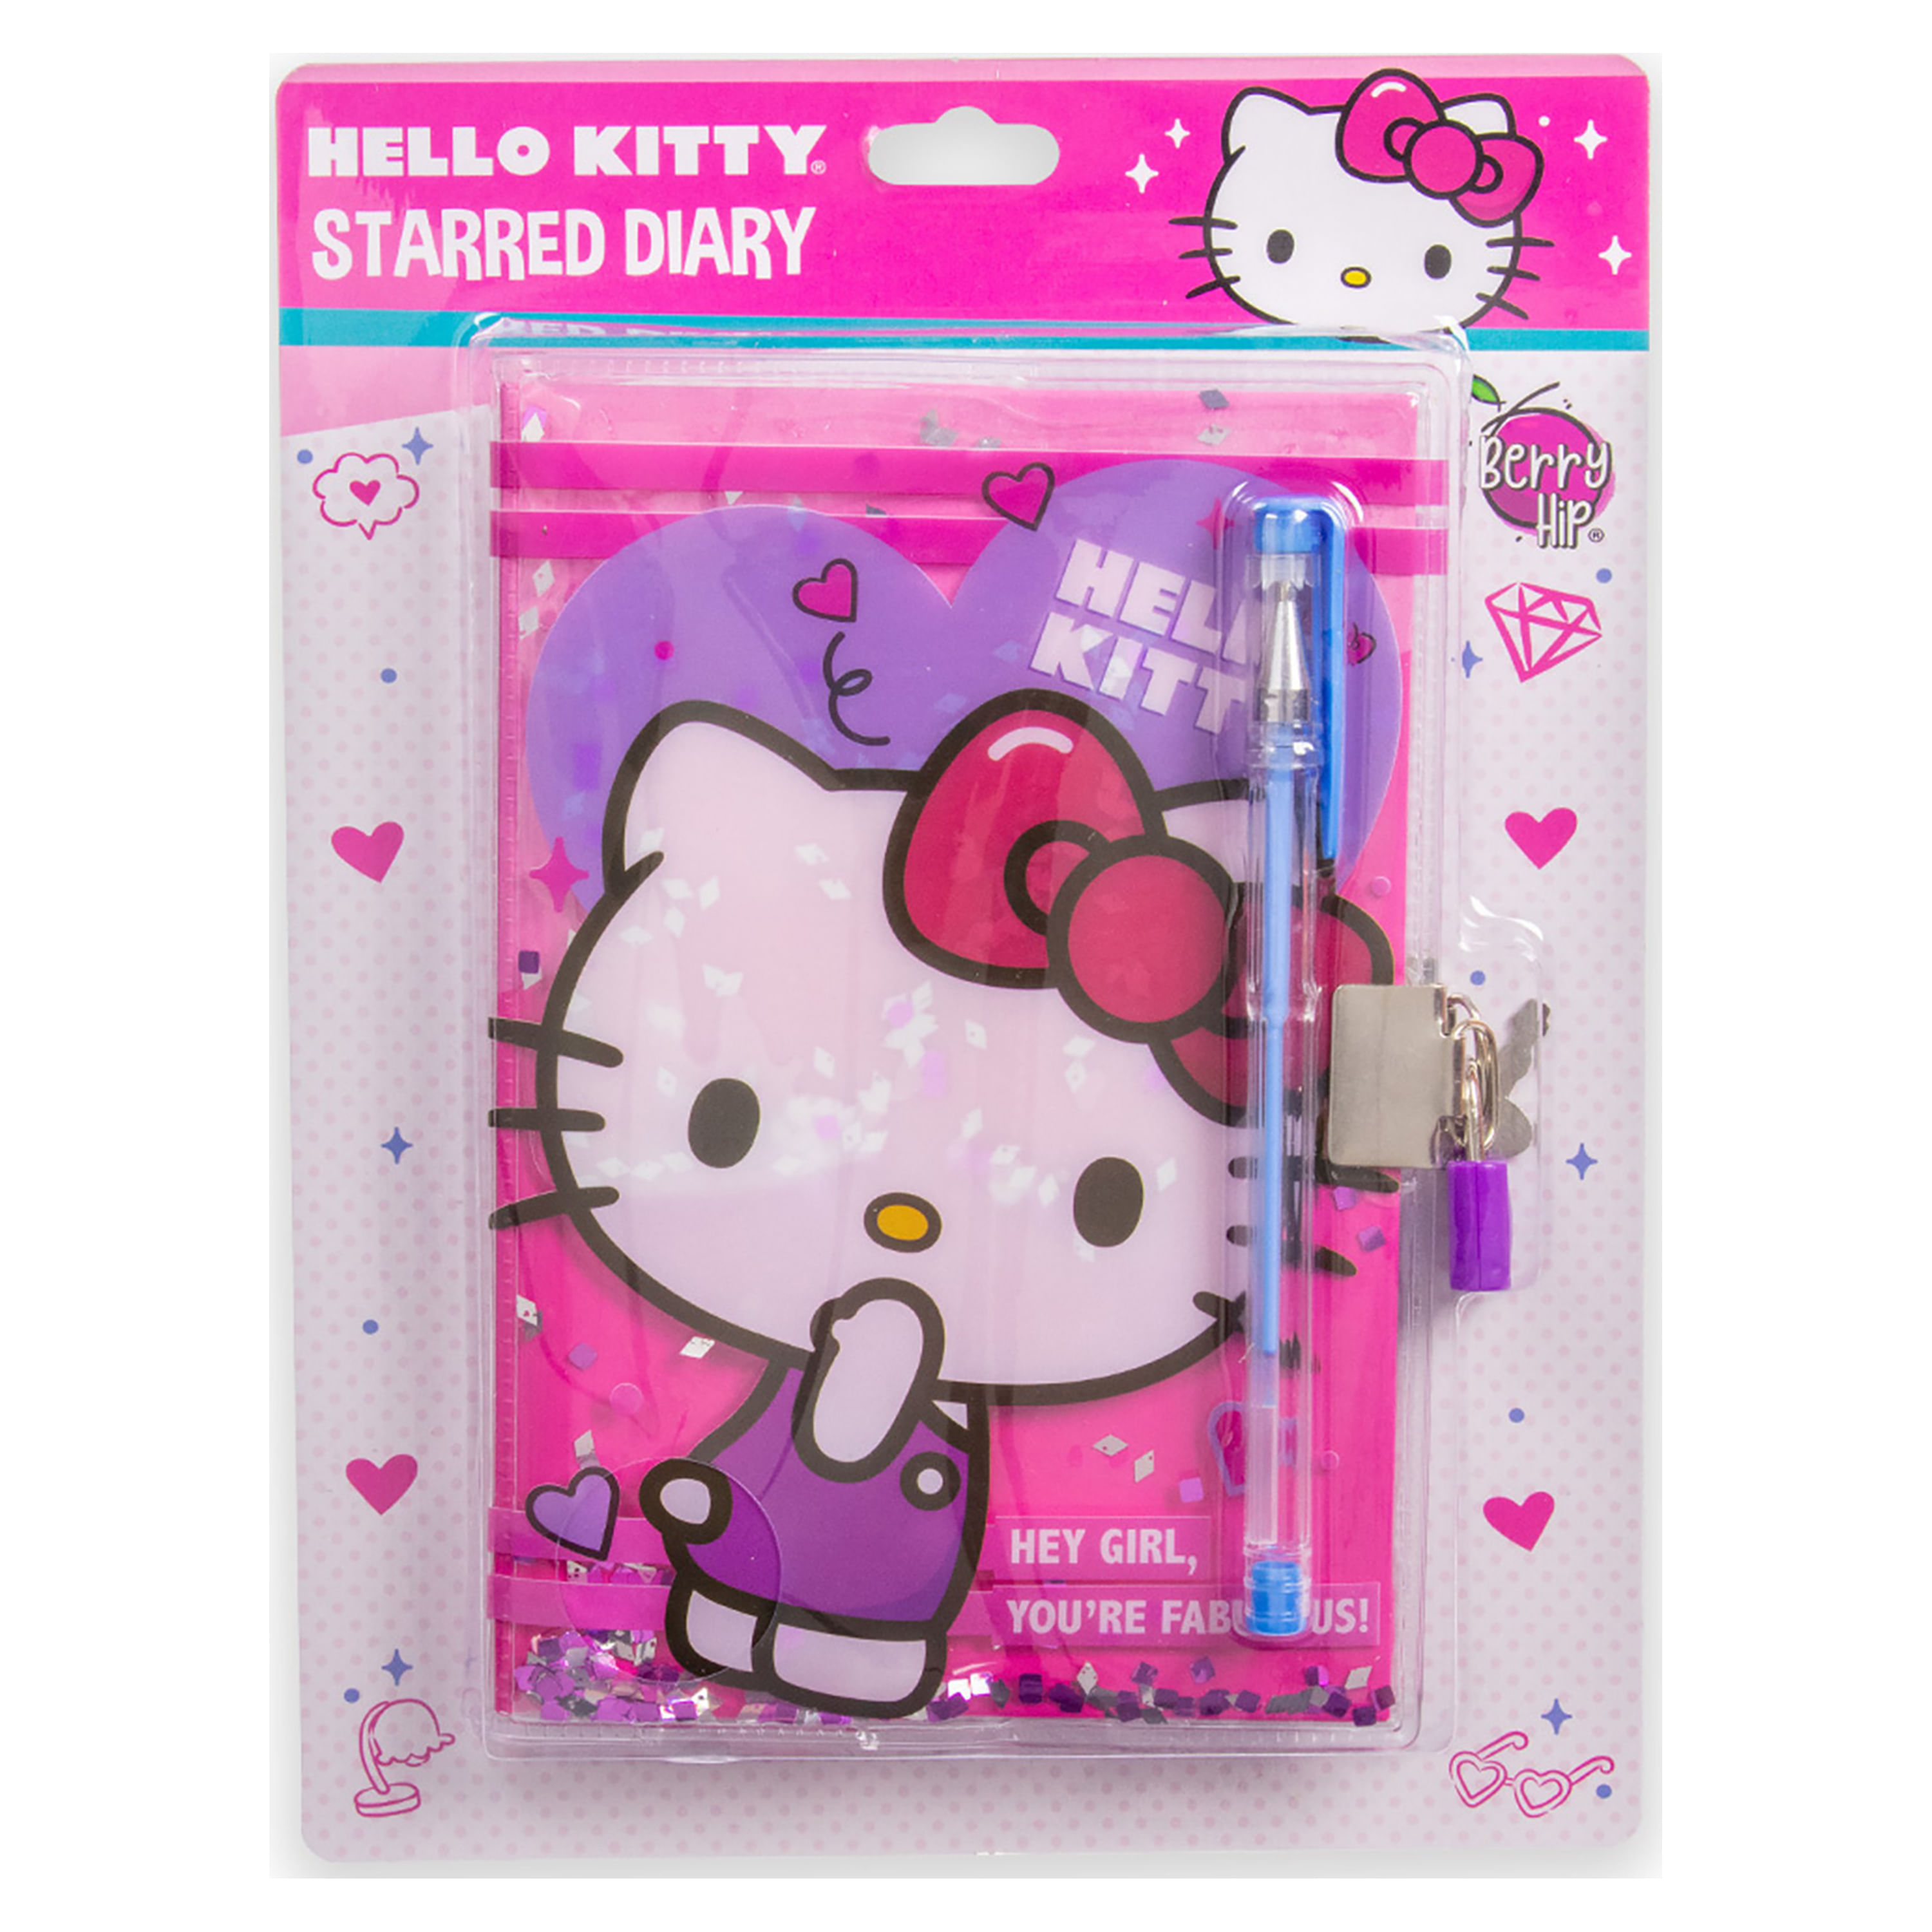 Comprar Diario Hello Kitty Con Estrellas | Walmart Honduras